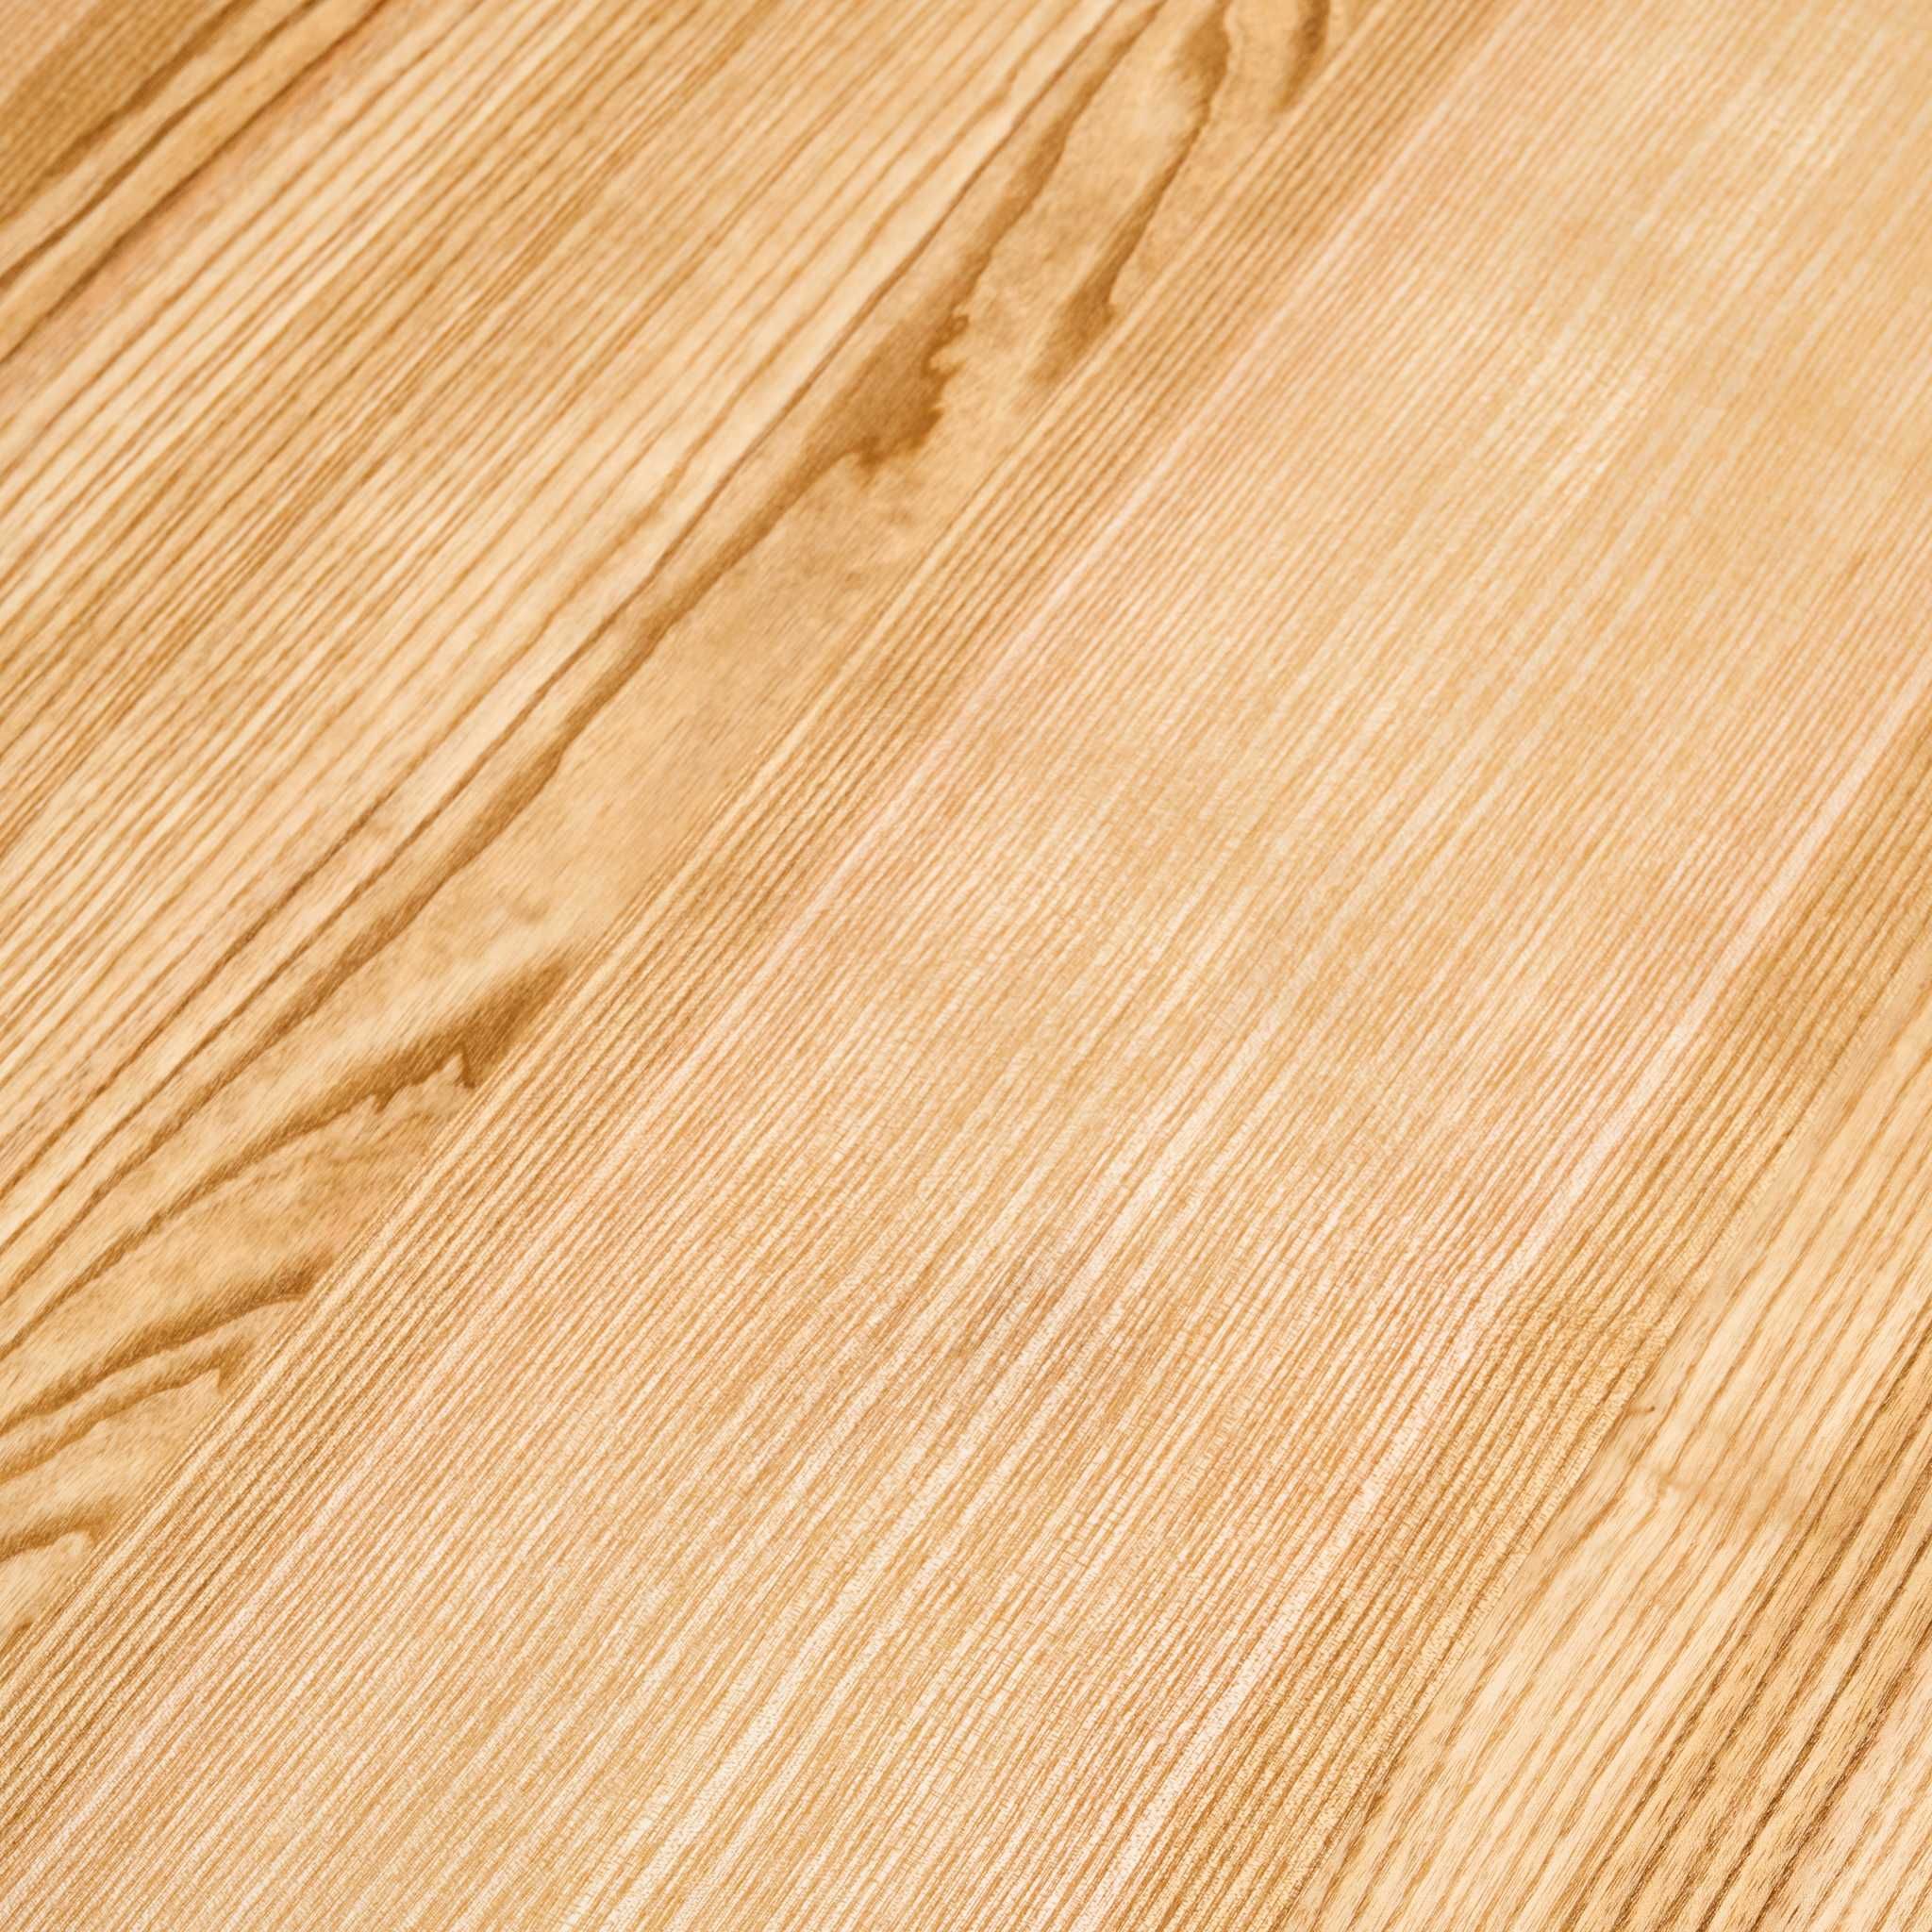 Stół powystawowy,blat drewno lite,stół jesionowy,drewno naturalne,loft